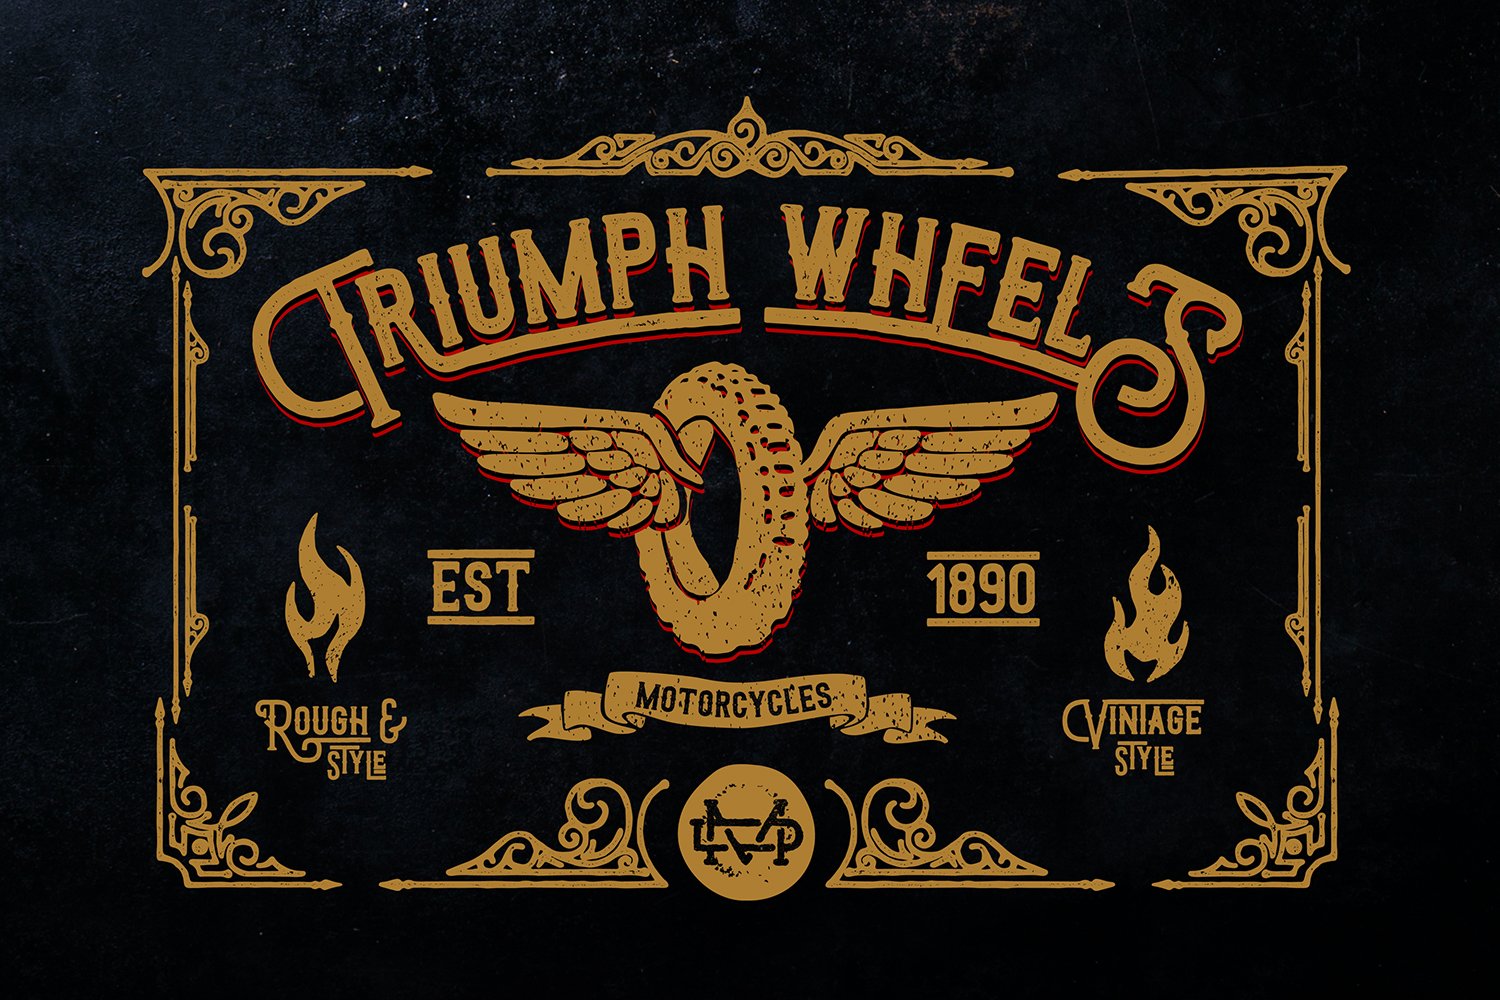 Triumph Wheels + Bonus cover image.